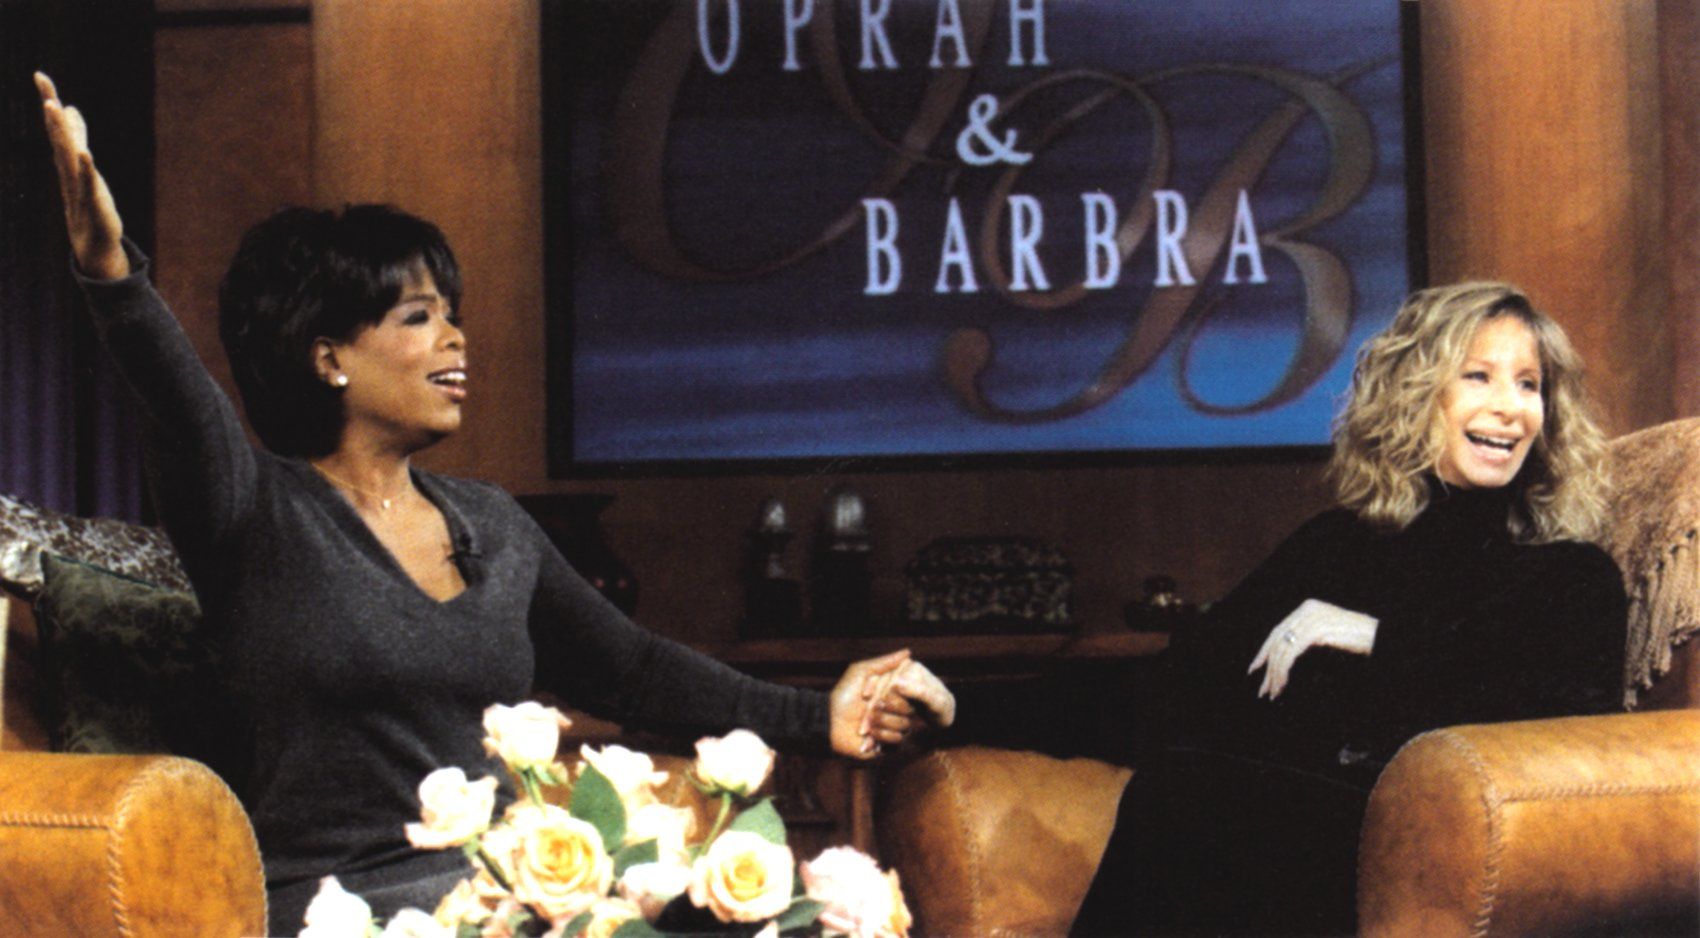 Oprah Winfrey welcomes Barbra Streisand on her show in 1996.